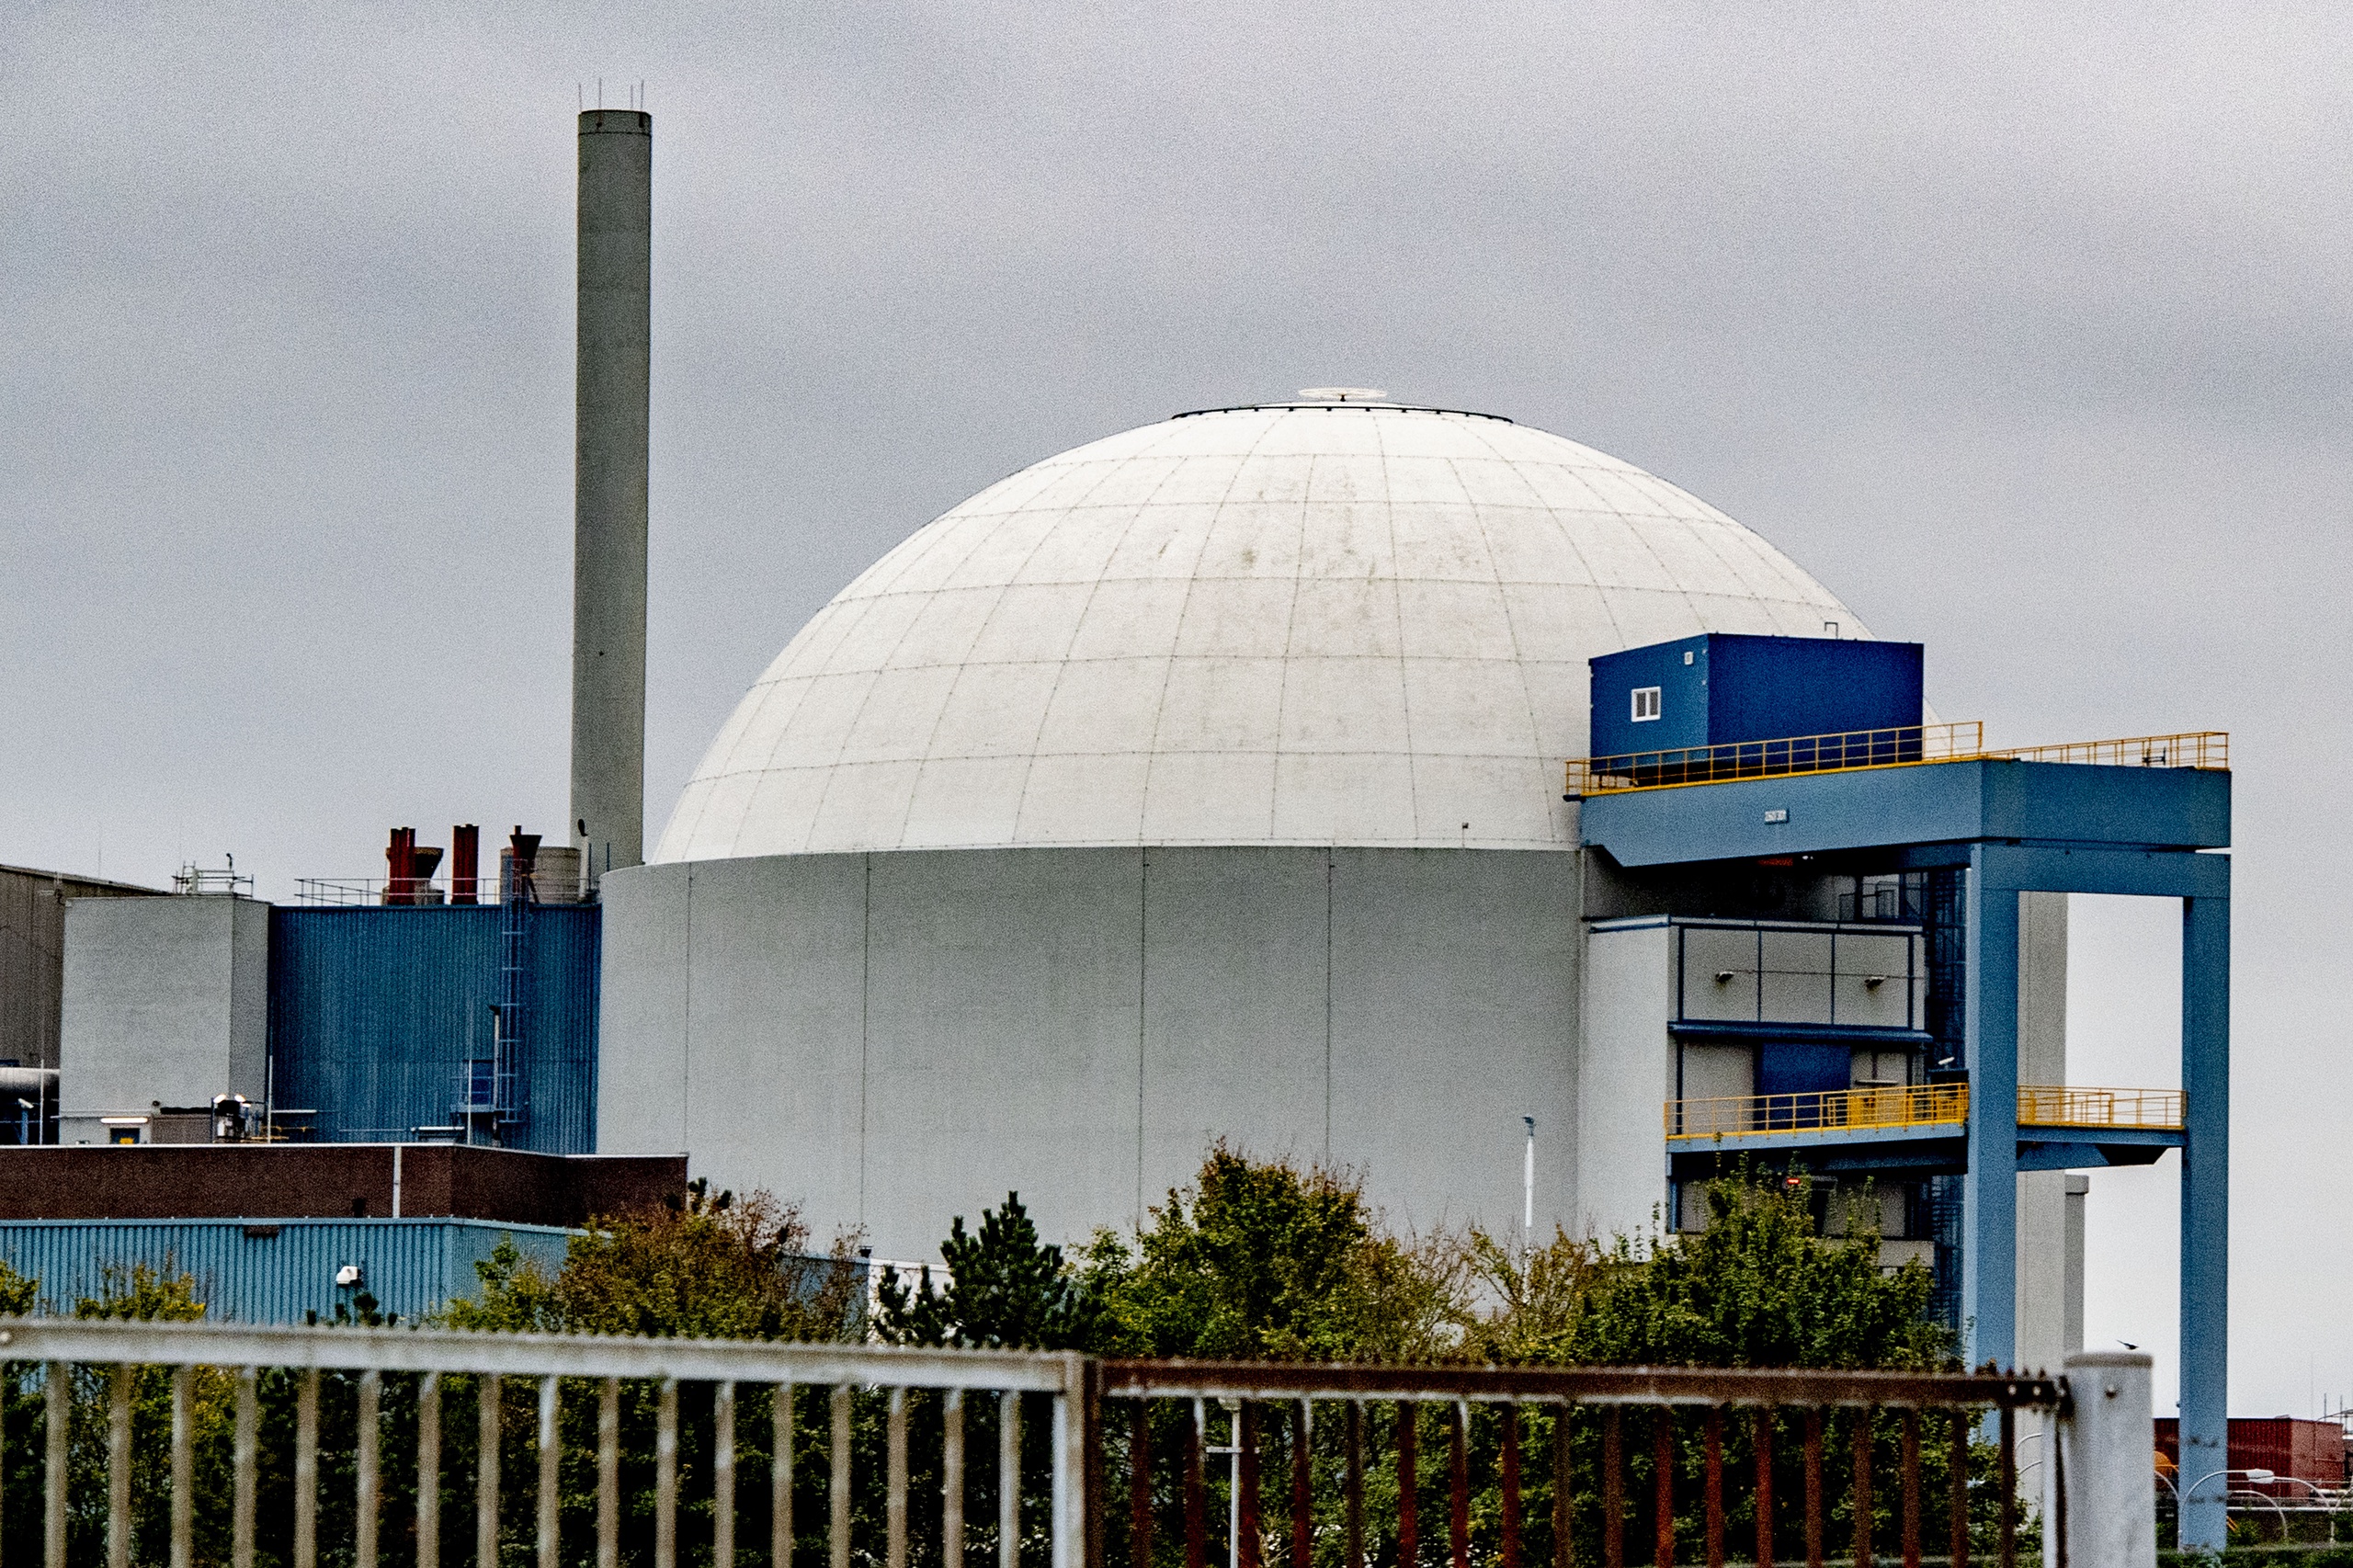 Na tien jaar debatteert de Tweede Kamer vandaag voor het eerst weer over de kwestie kernenergie. Langzaam maar zeker komt de vraag weer op bij politiek Den Haag of er nieuwe kerncentrales moeten komen in Nederland. In het Zeelandse Borsele staat deze kerncentrale. 